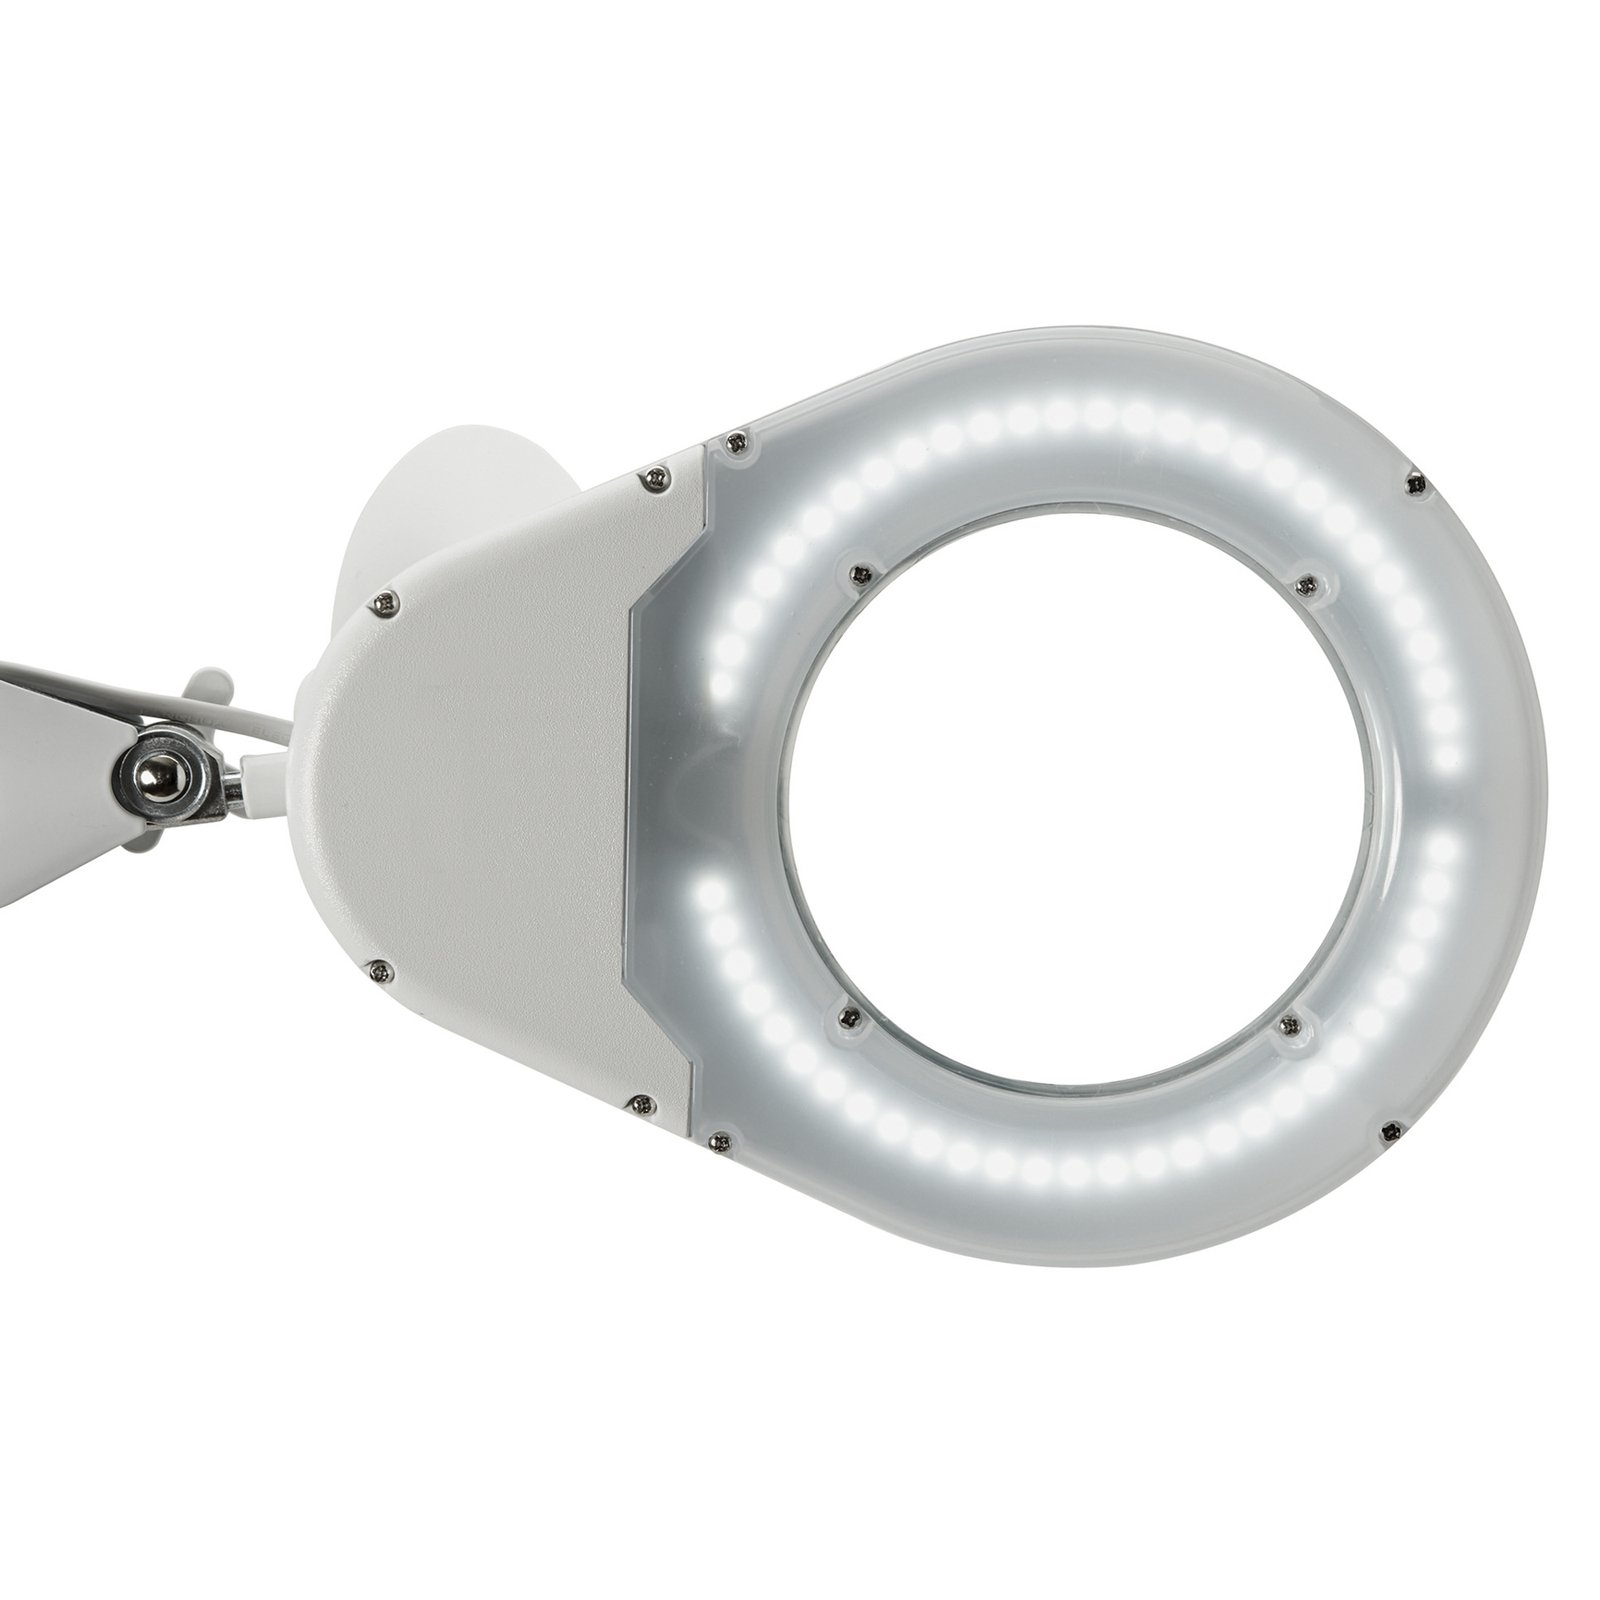 MAULviso LED-es nagyító lámpa bilinccsel, fehér színben